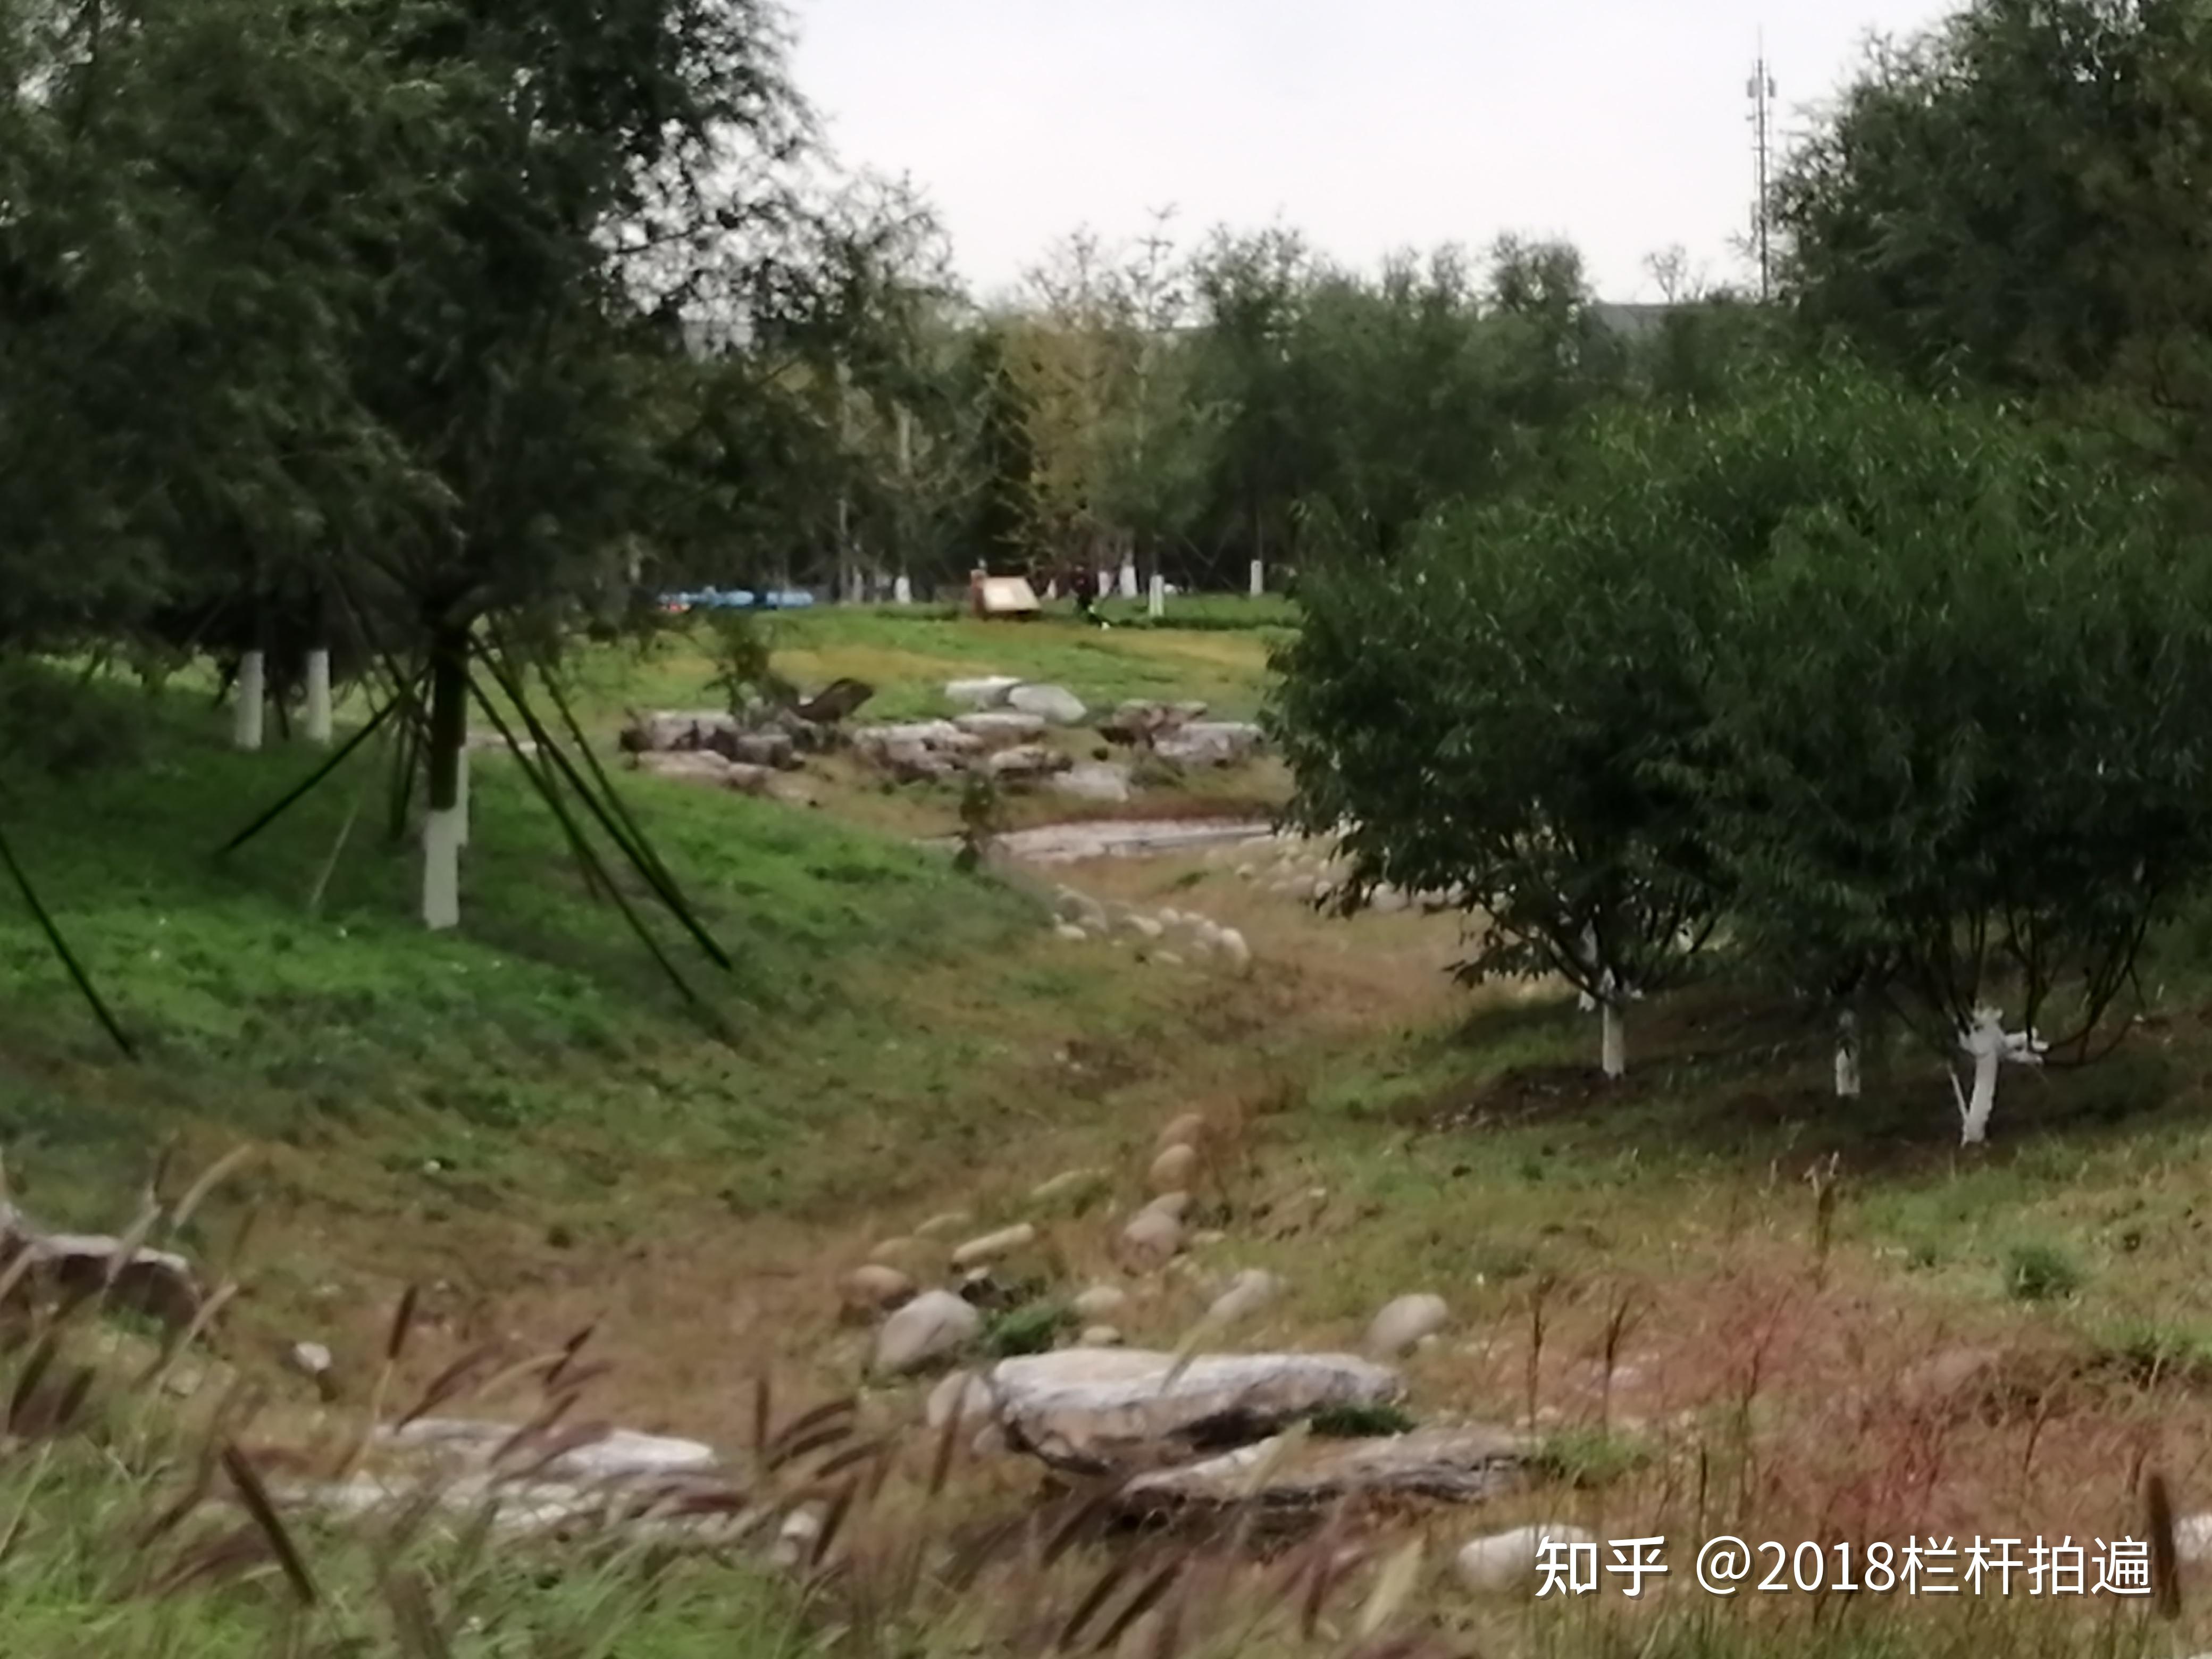 晒！晒！晒！树枝雕塑网红园—北京丰台久敬庄公园打卡记 - 知乎